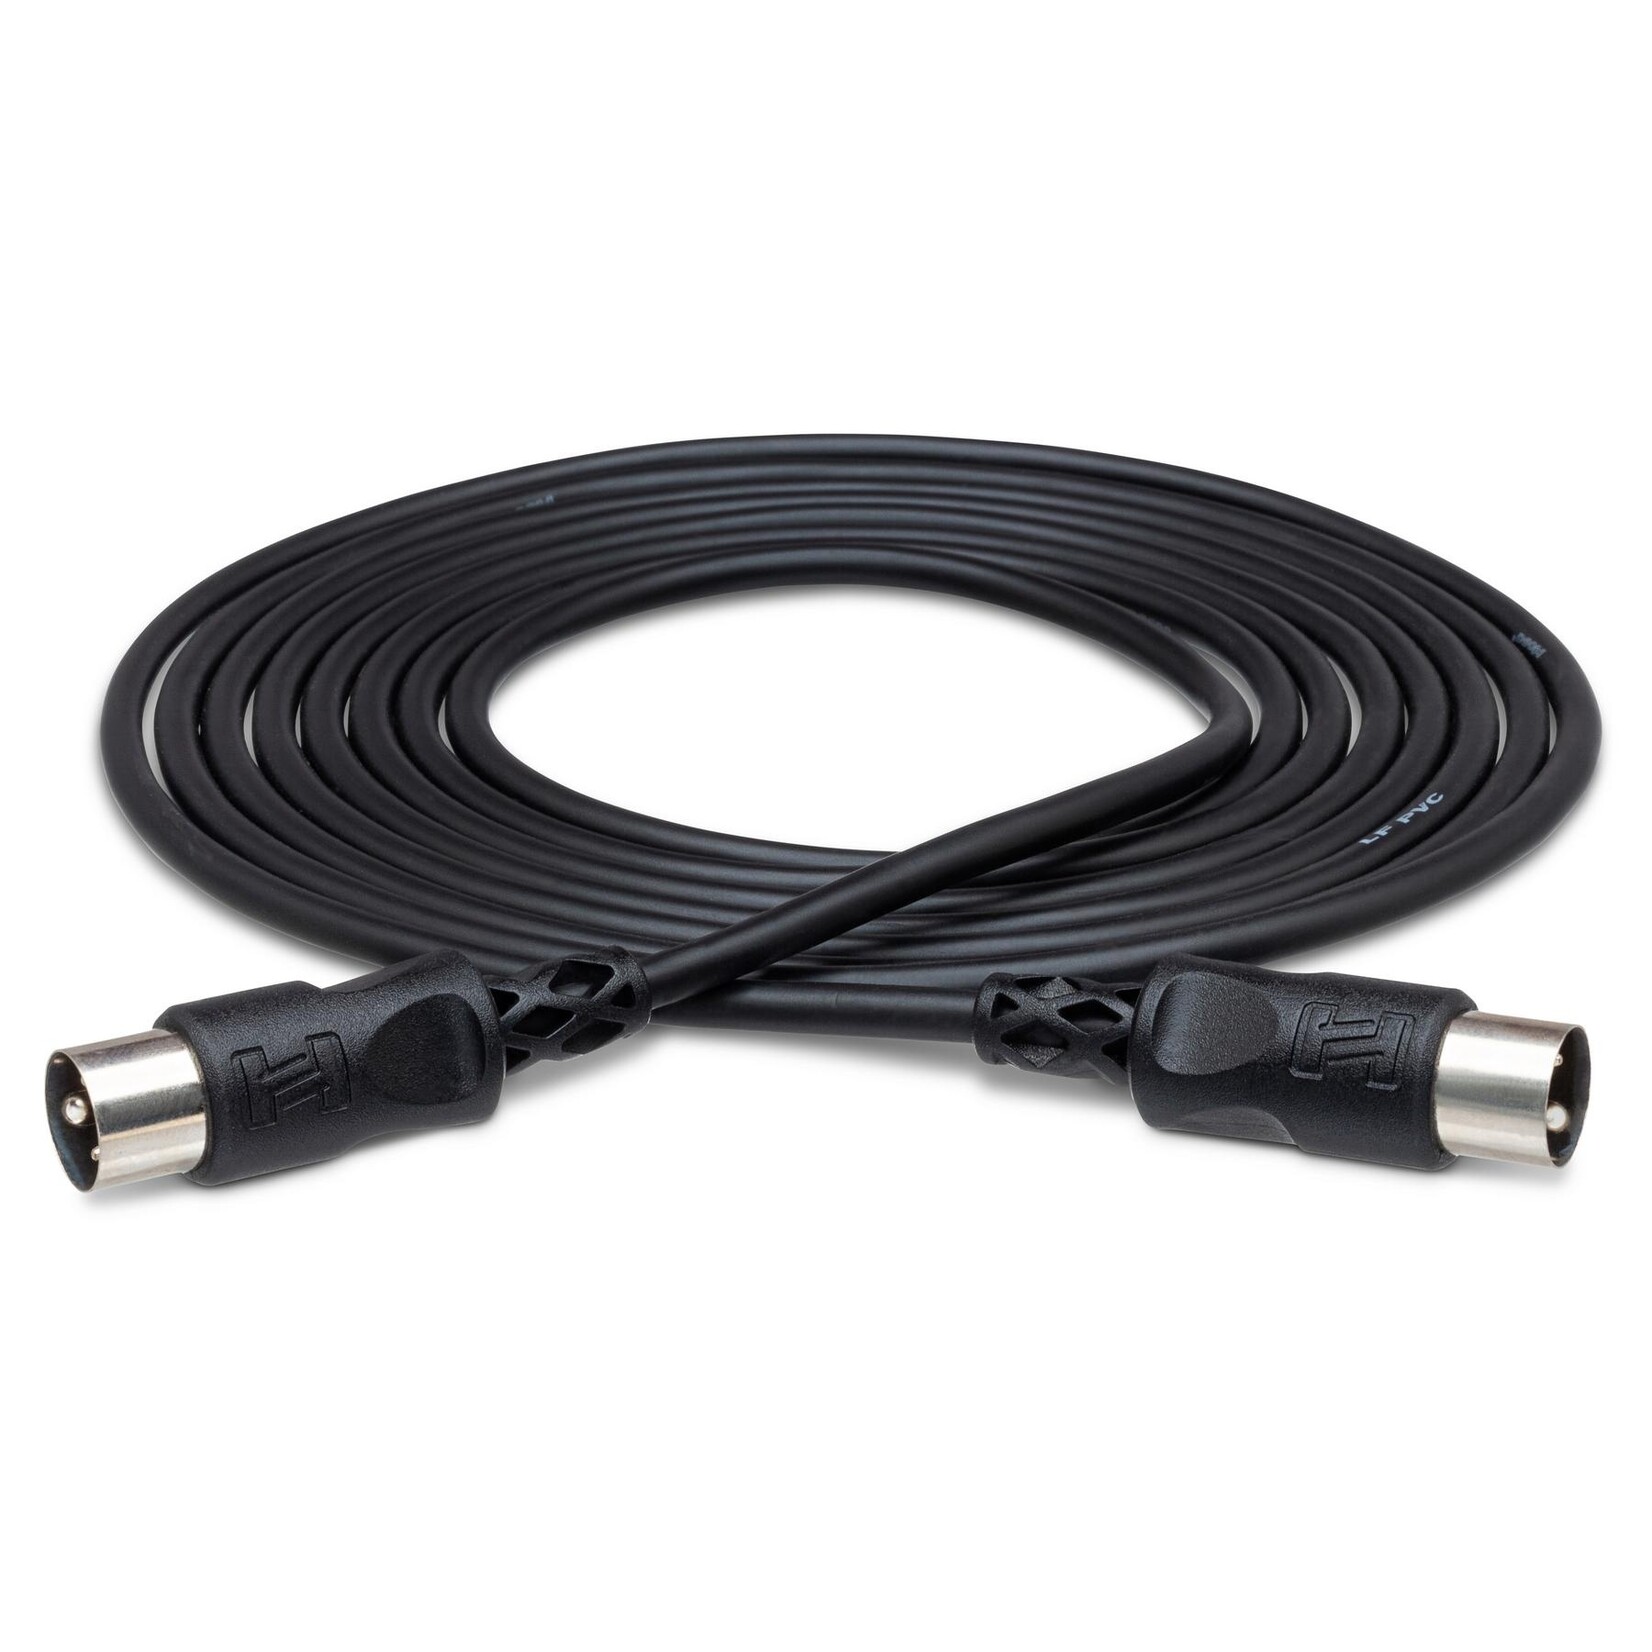 Hosa MID-310BK MIDI Cable - 10 ft